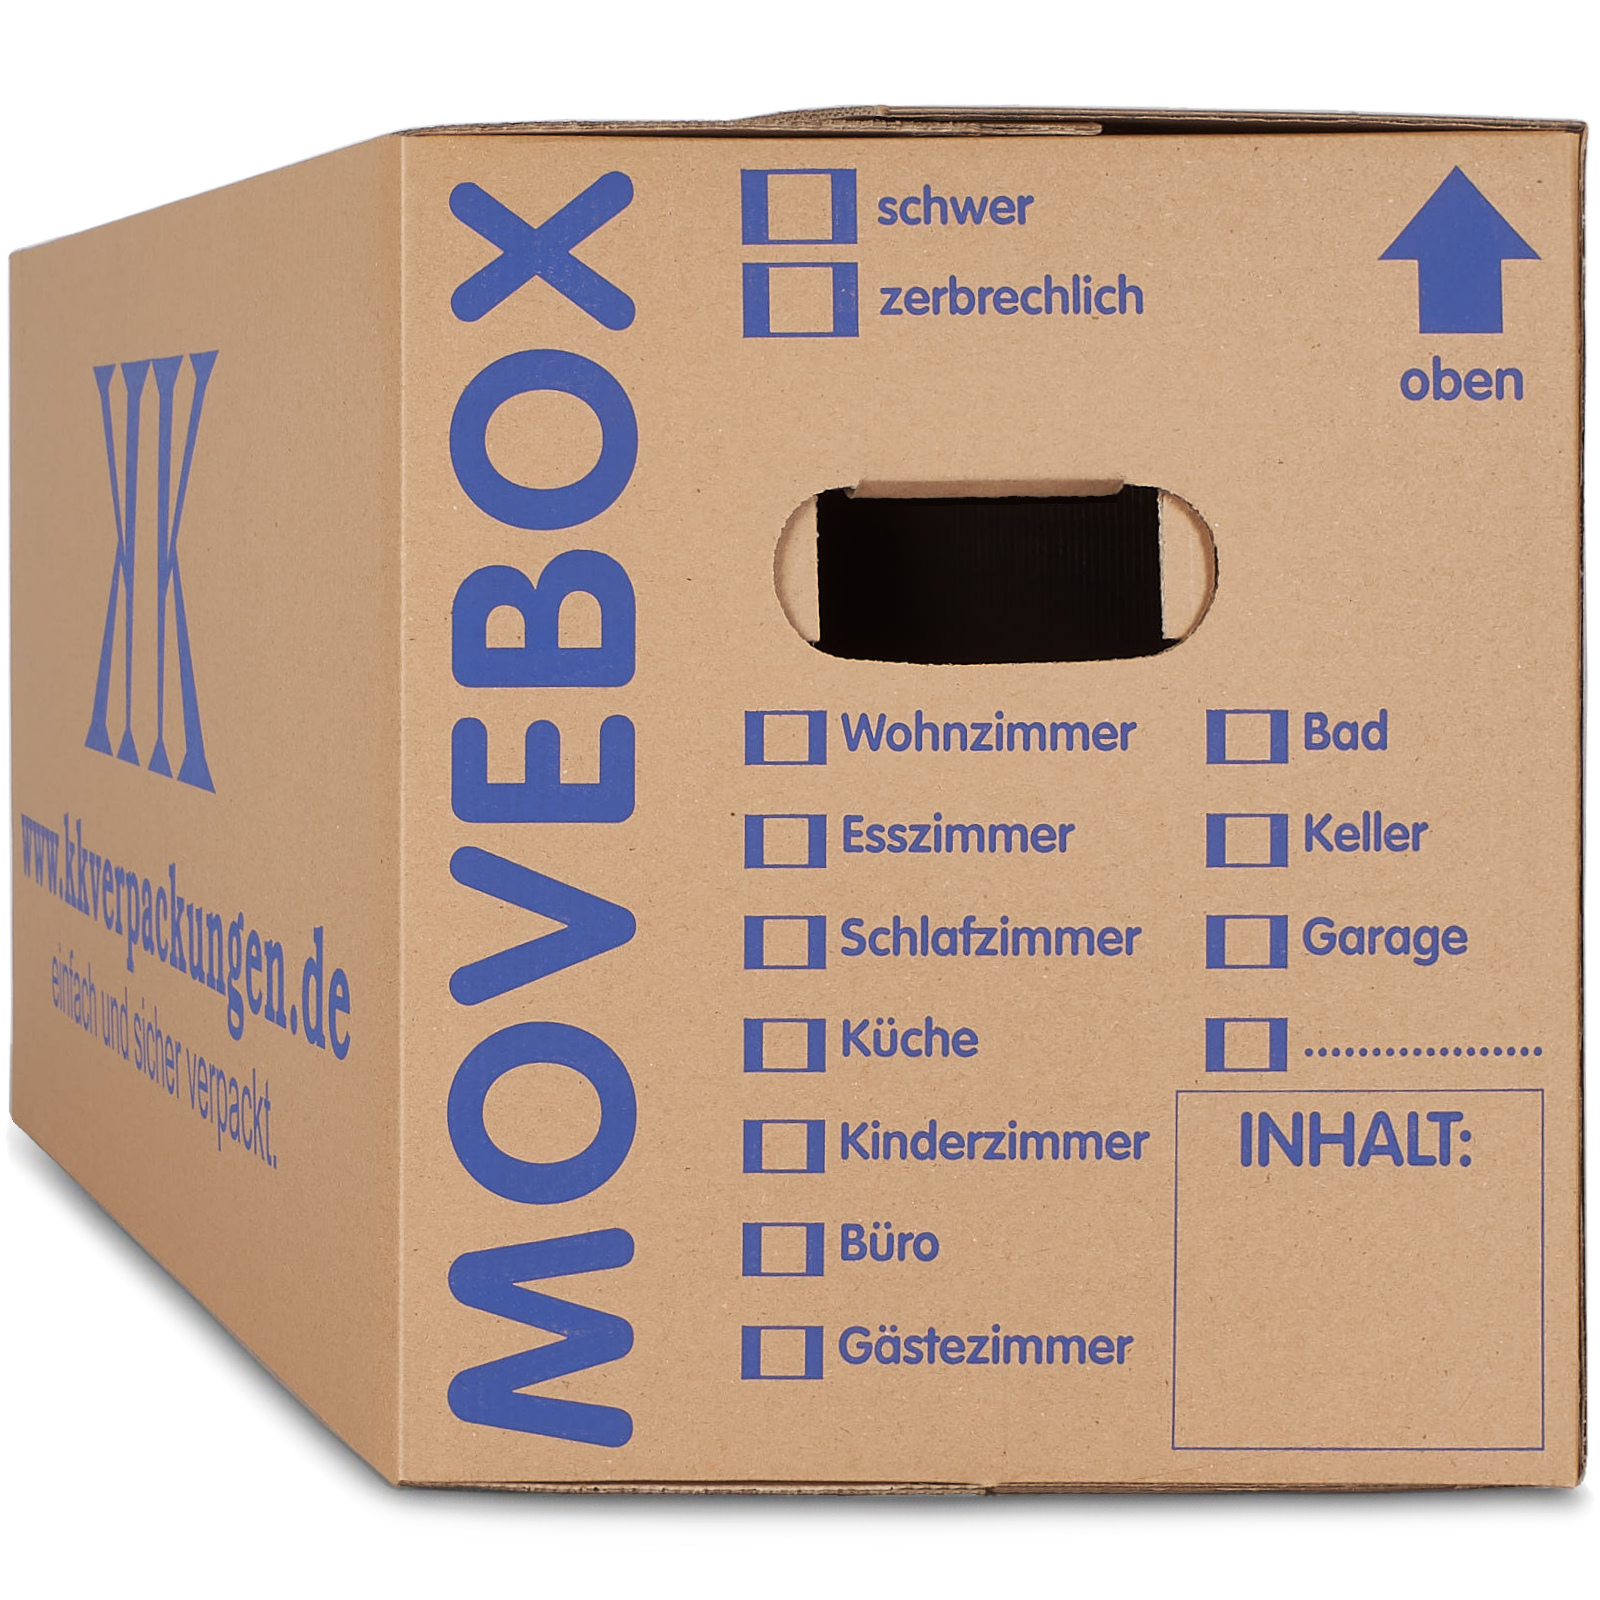 Umzugskartons Umzug Karton 2-wellig 45kg Profi Umzugskisten Movebox Bücherkarton 